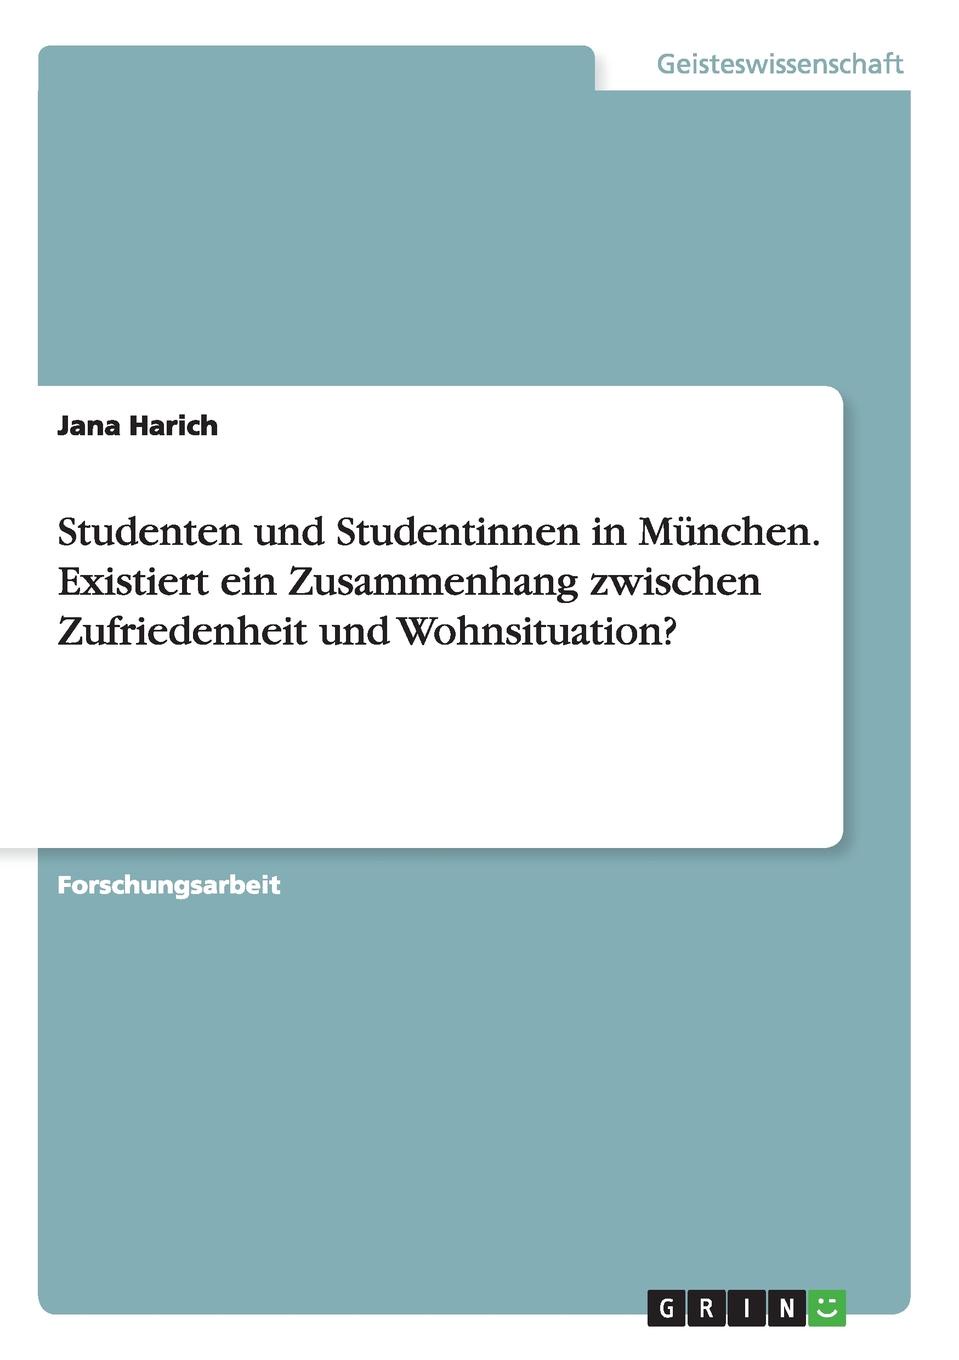 Studenten und Studentinnen in Munchen. Existiert ein Zusammenhang zwischen Zufriedenheit und Wohnsituation.